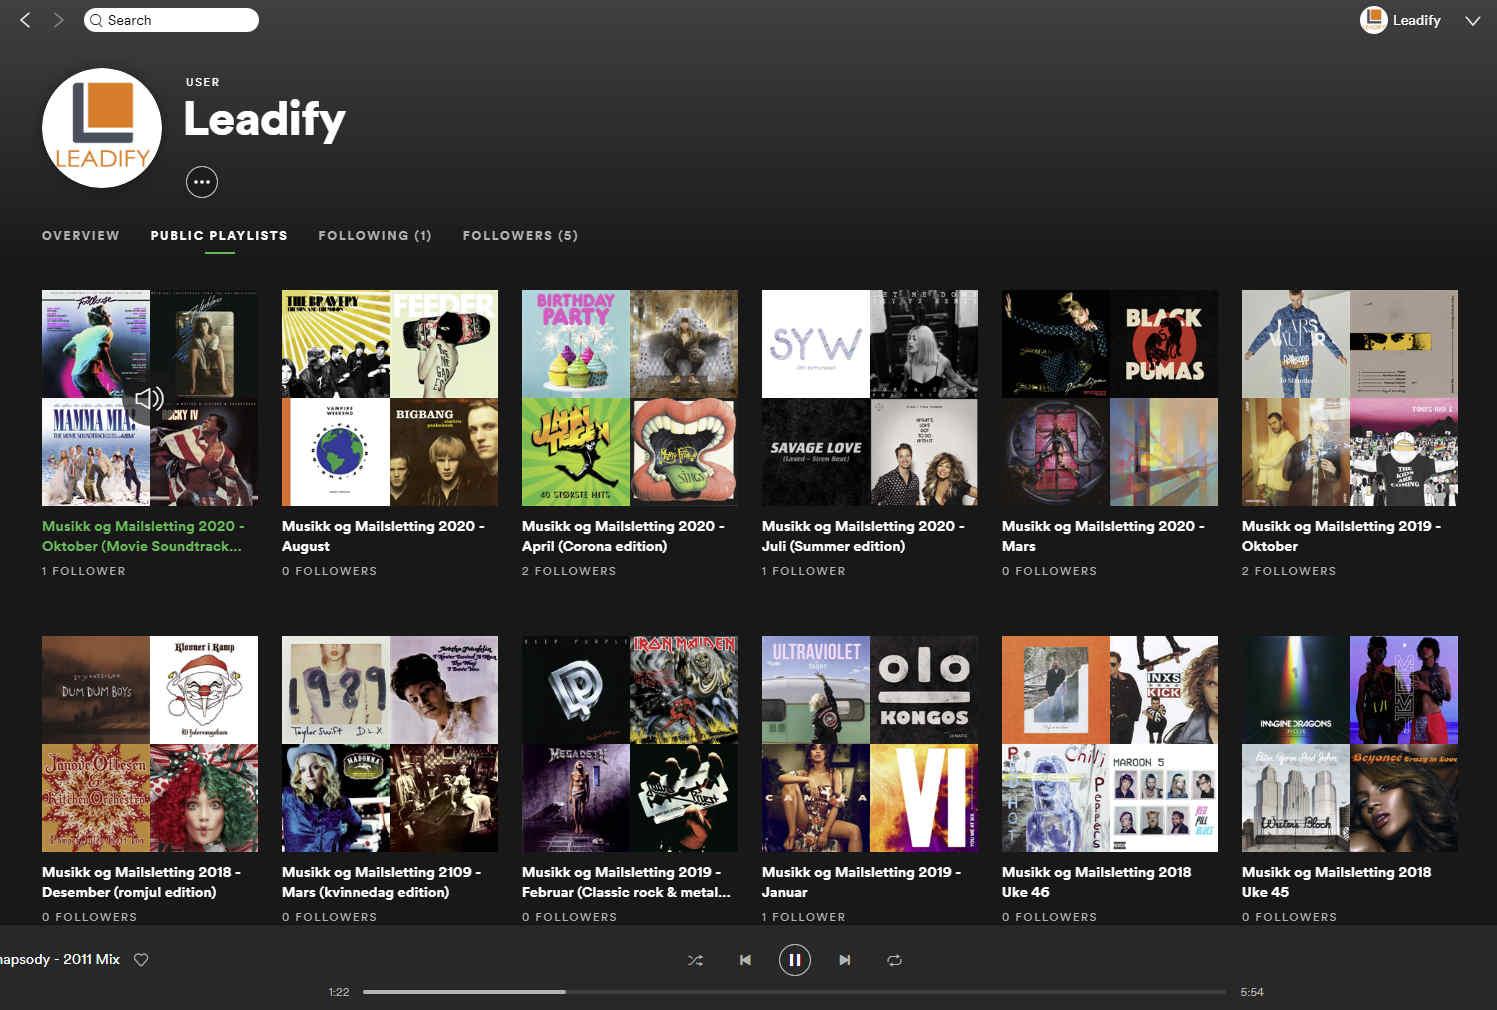 Leadify on Spotify